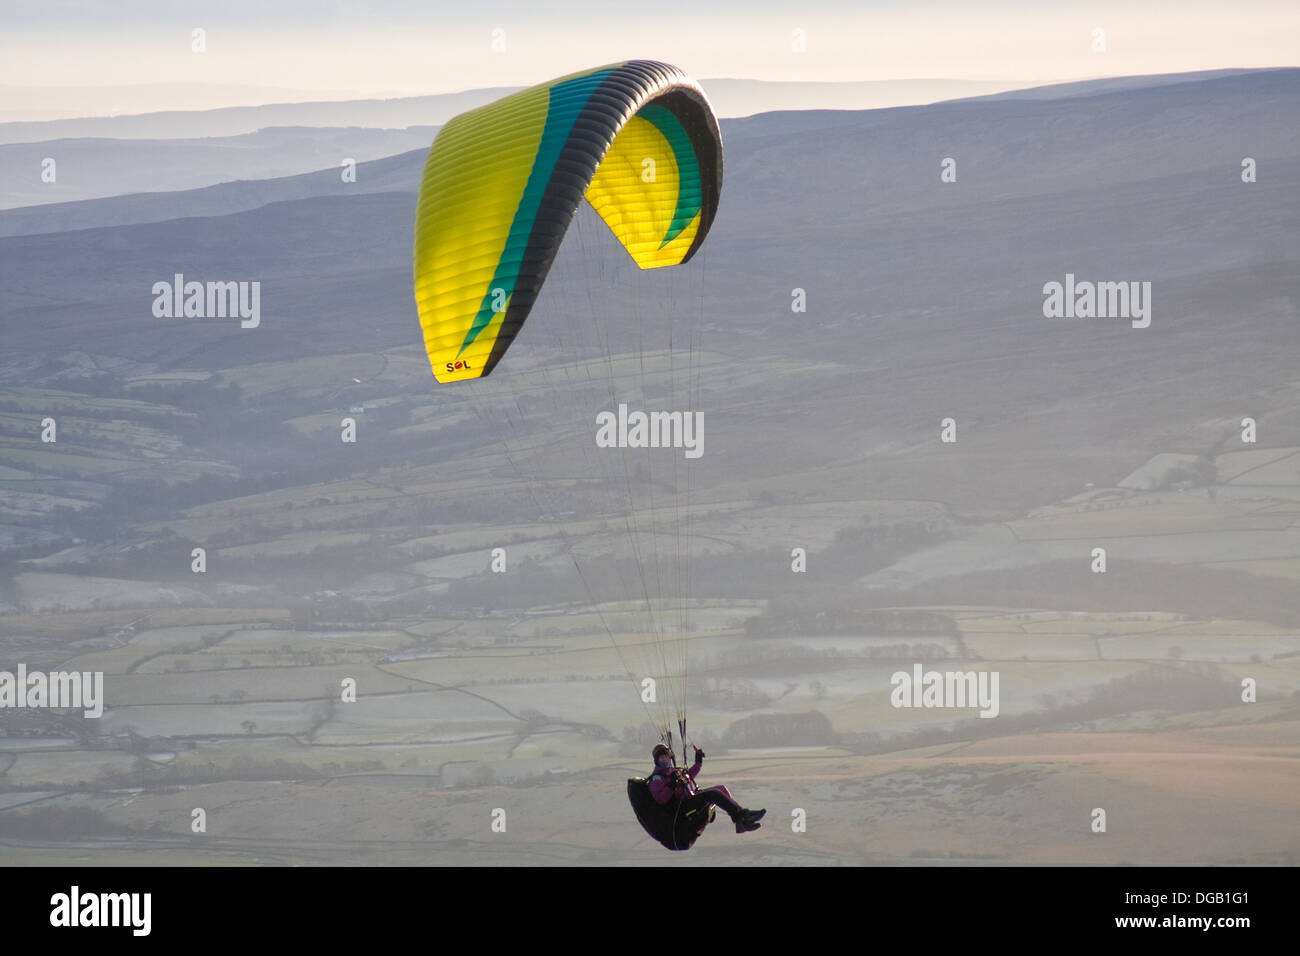 Ein Gleitschirm hängt in der Luft, kurz nach dem Start von Ingleborough in Yorkshire Dales Stockfoto